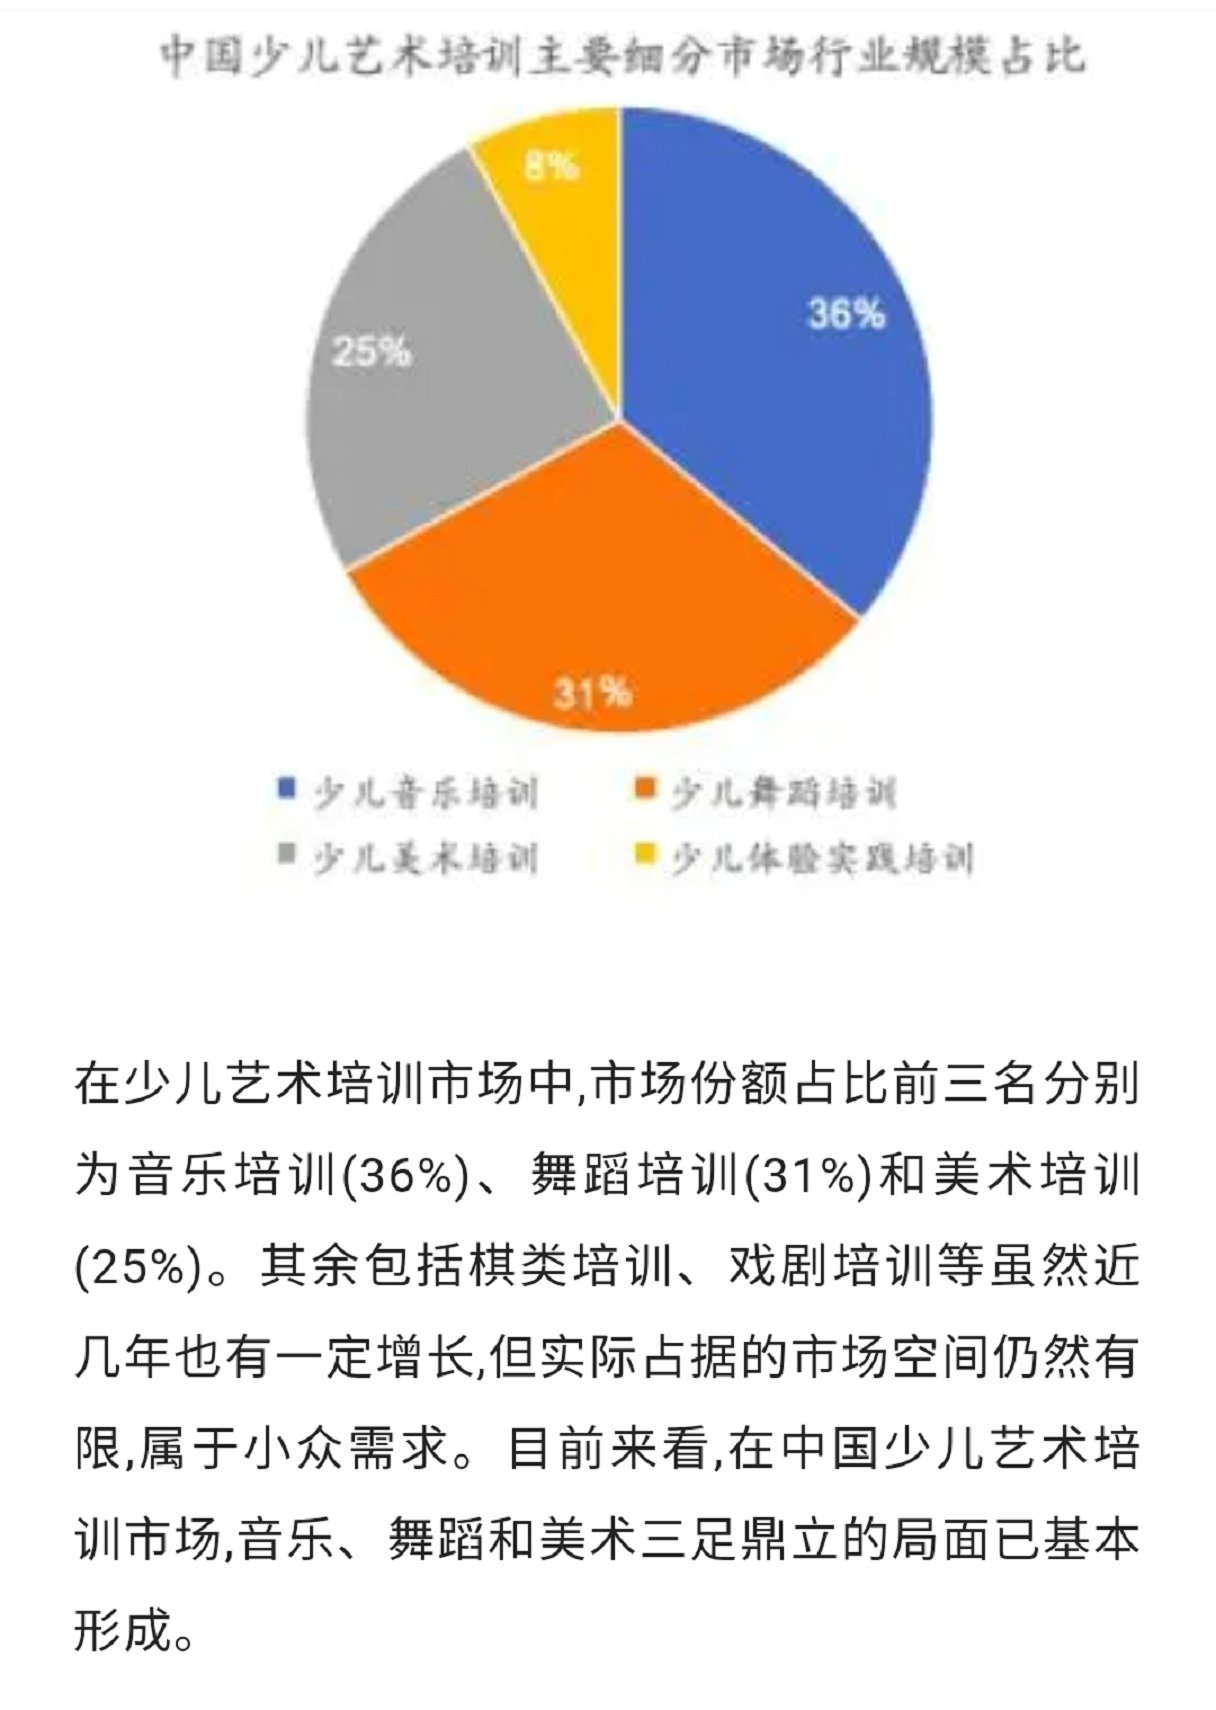 行业解析 ‖ 2020年中国艺术教育培训行业趋势数据